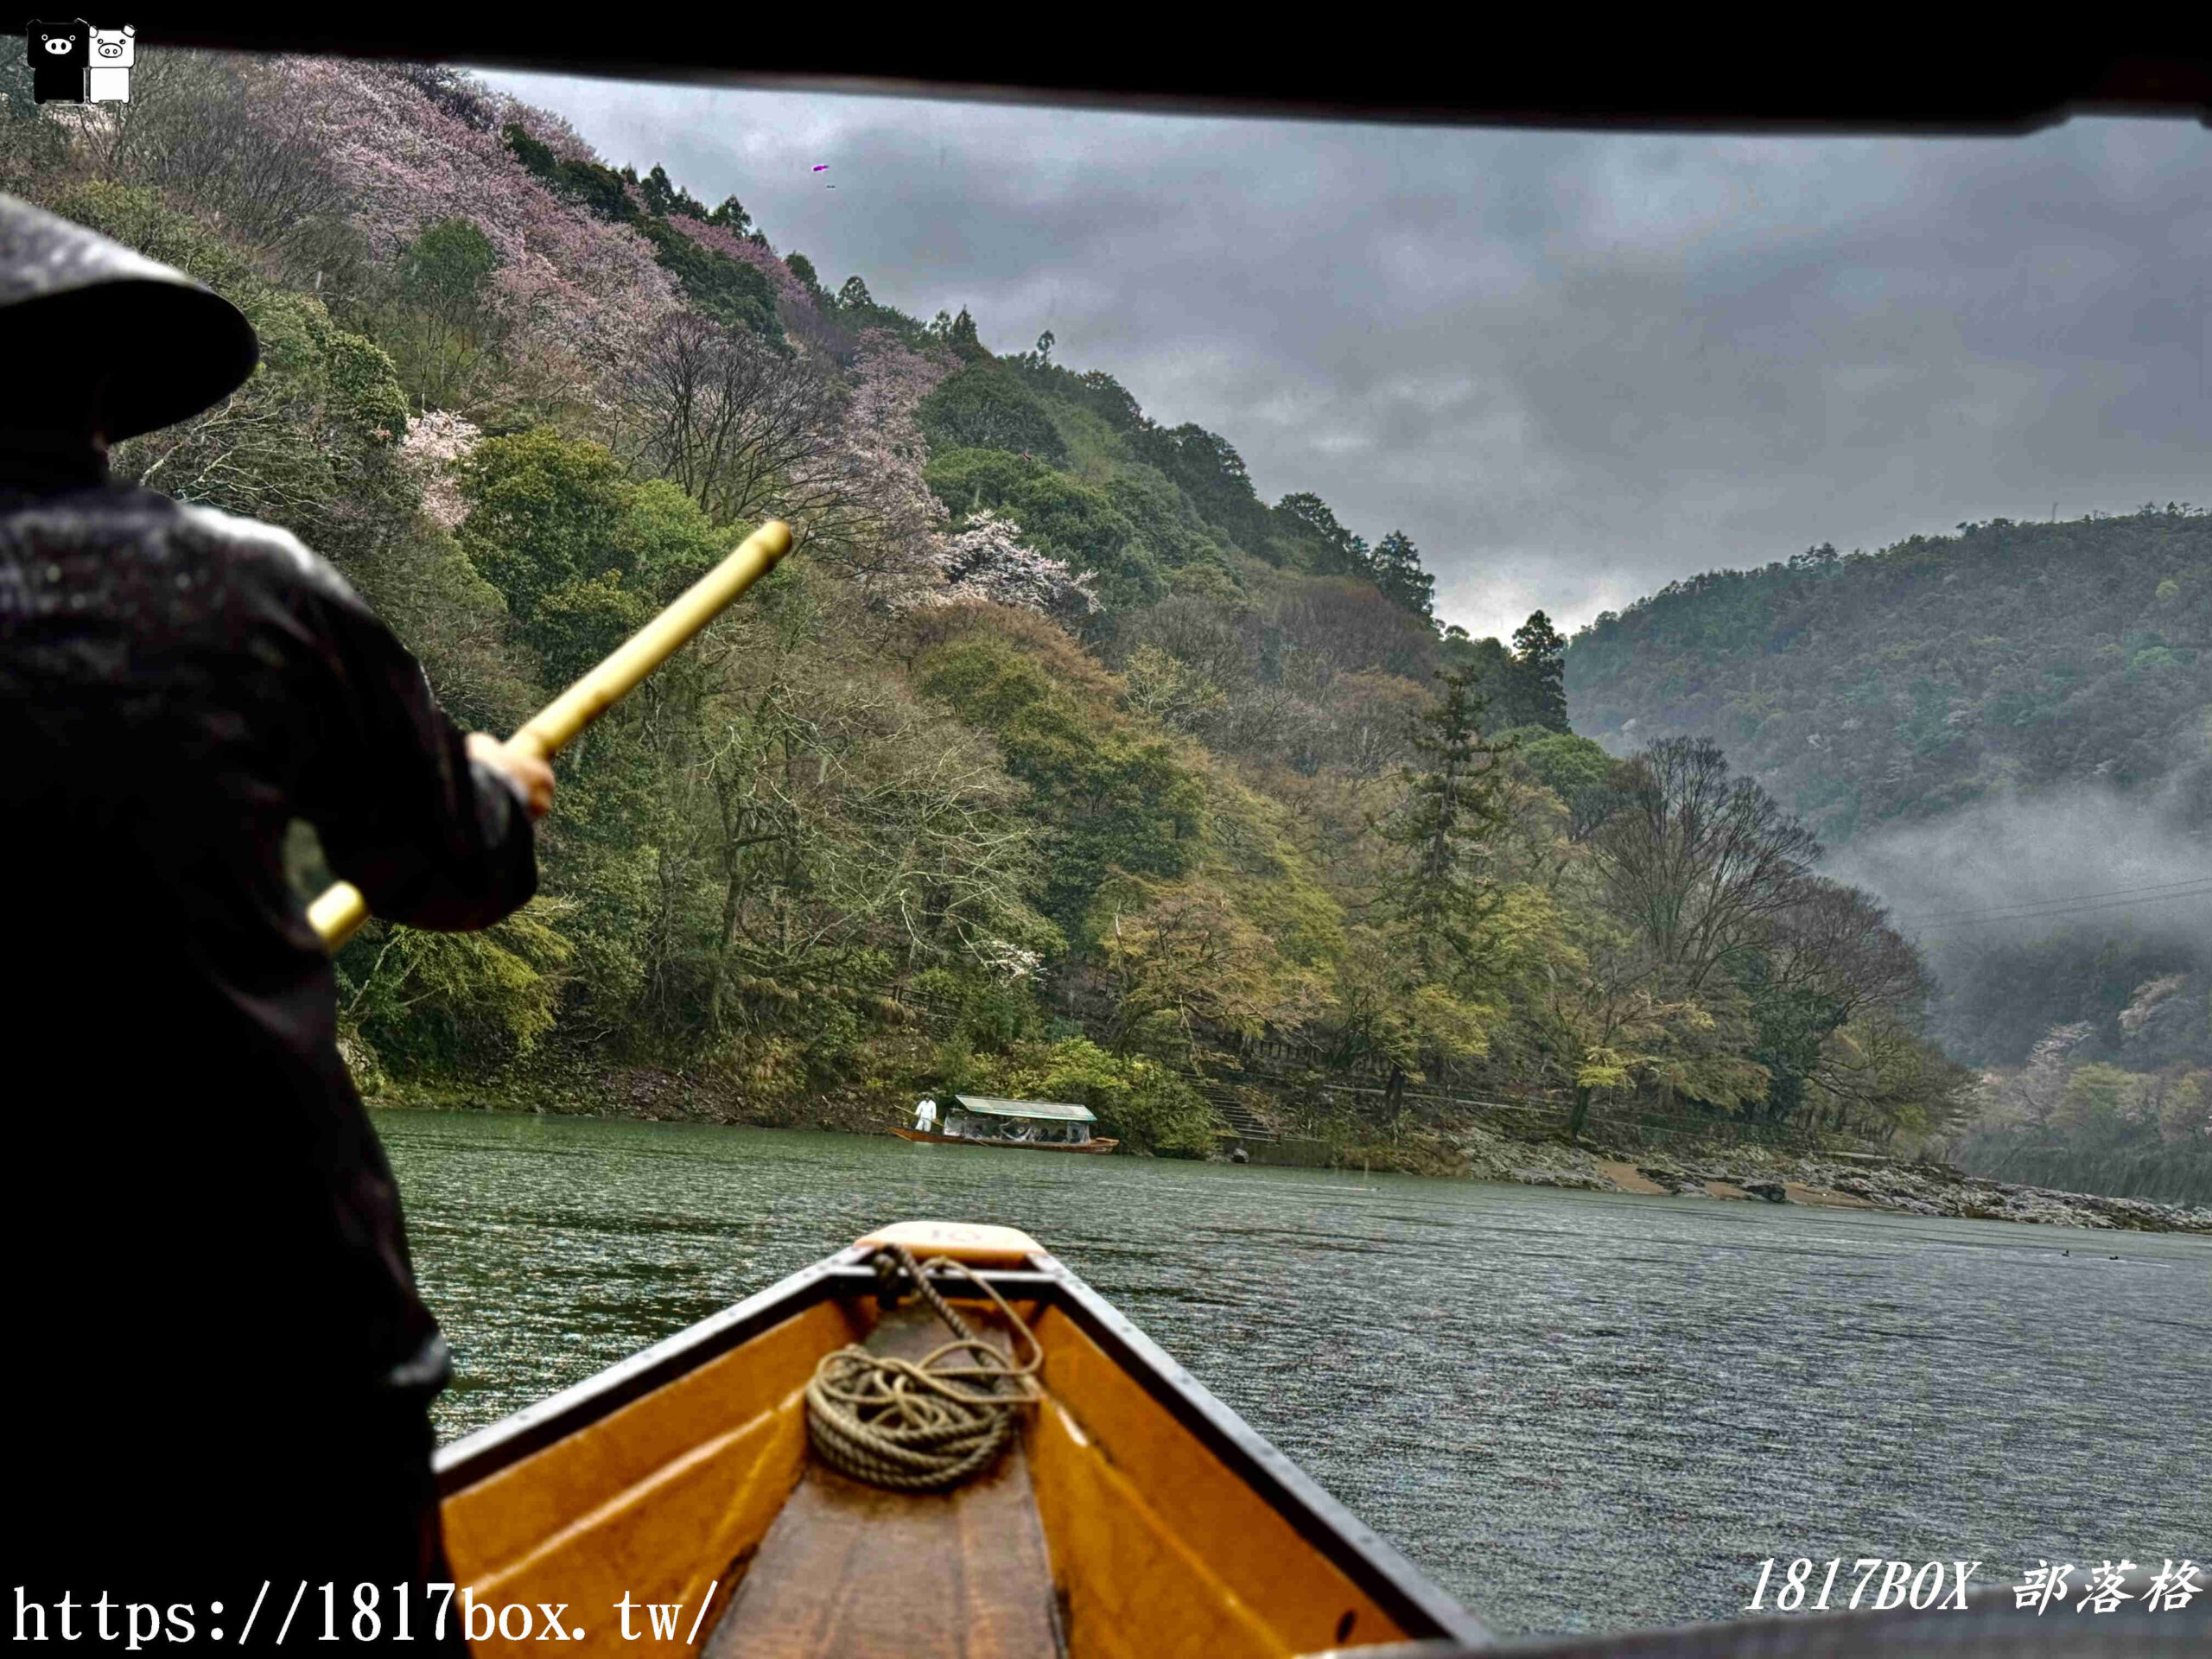 【京都景點】嵐山・保津川遊船。保津川峽谷景觀詩情畫意。穿越山間峽谷神秘如鏡